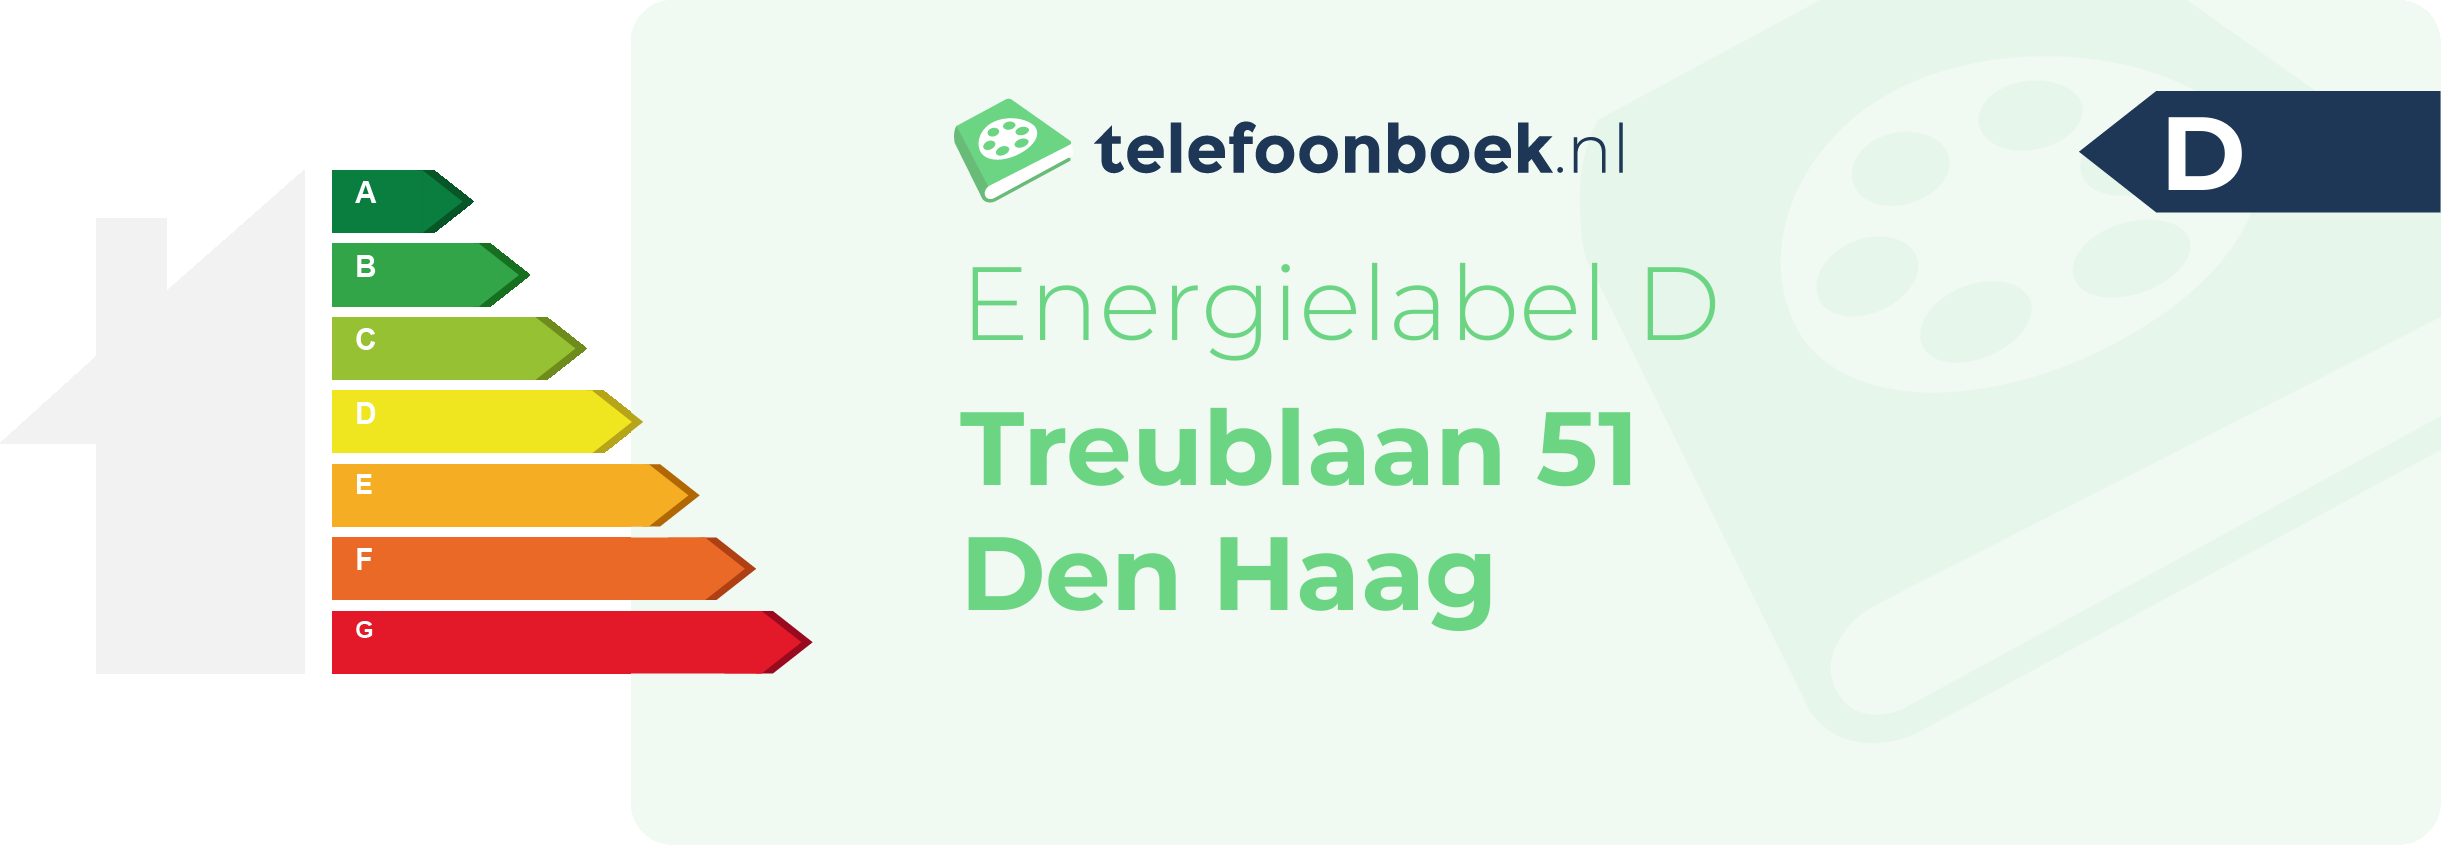 Energielabel Treublaan 51 Den Haag